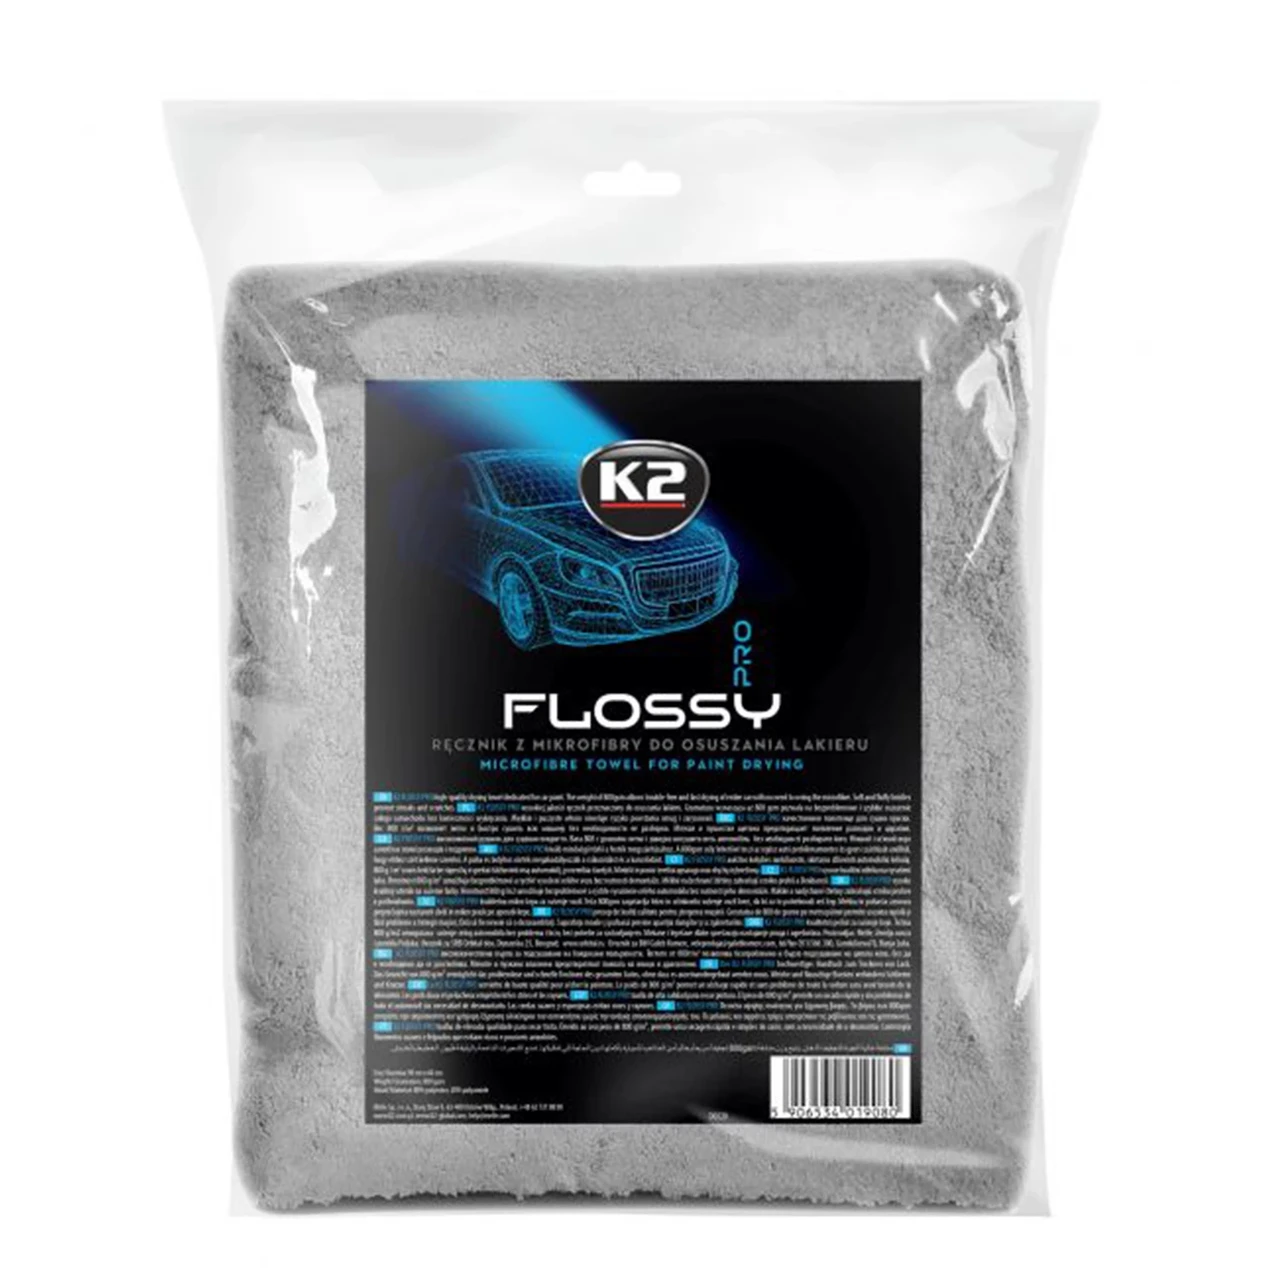 Рушник K2 Flossy PRO для сушки лакофарбової поверхні мікрофібра 90 см x 60 см (D0220)